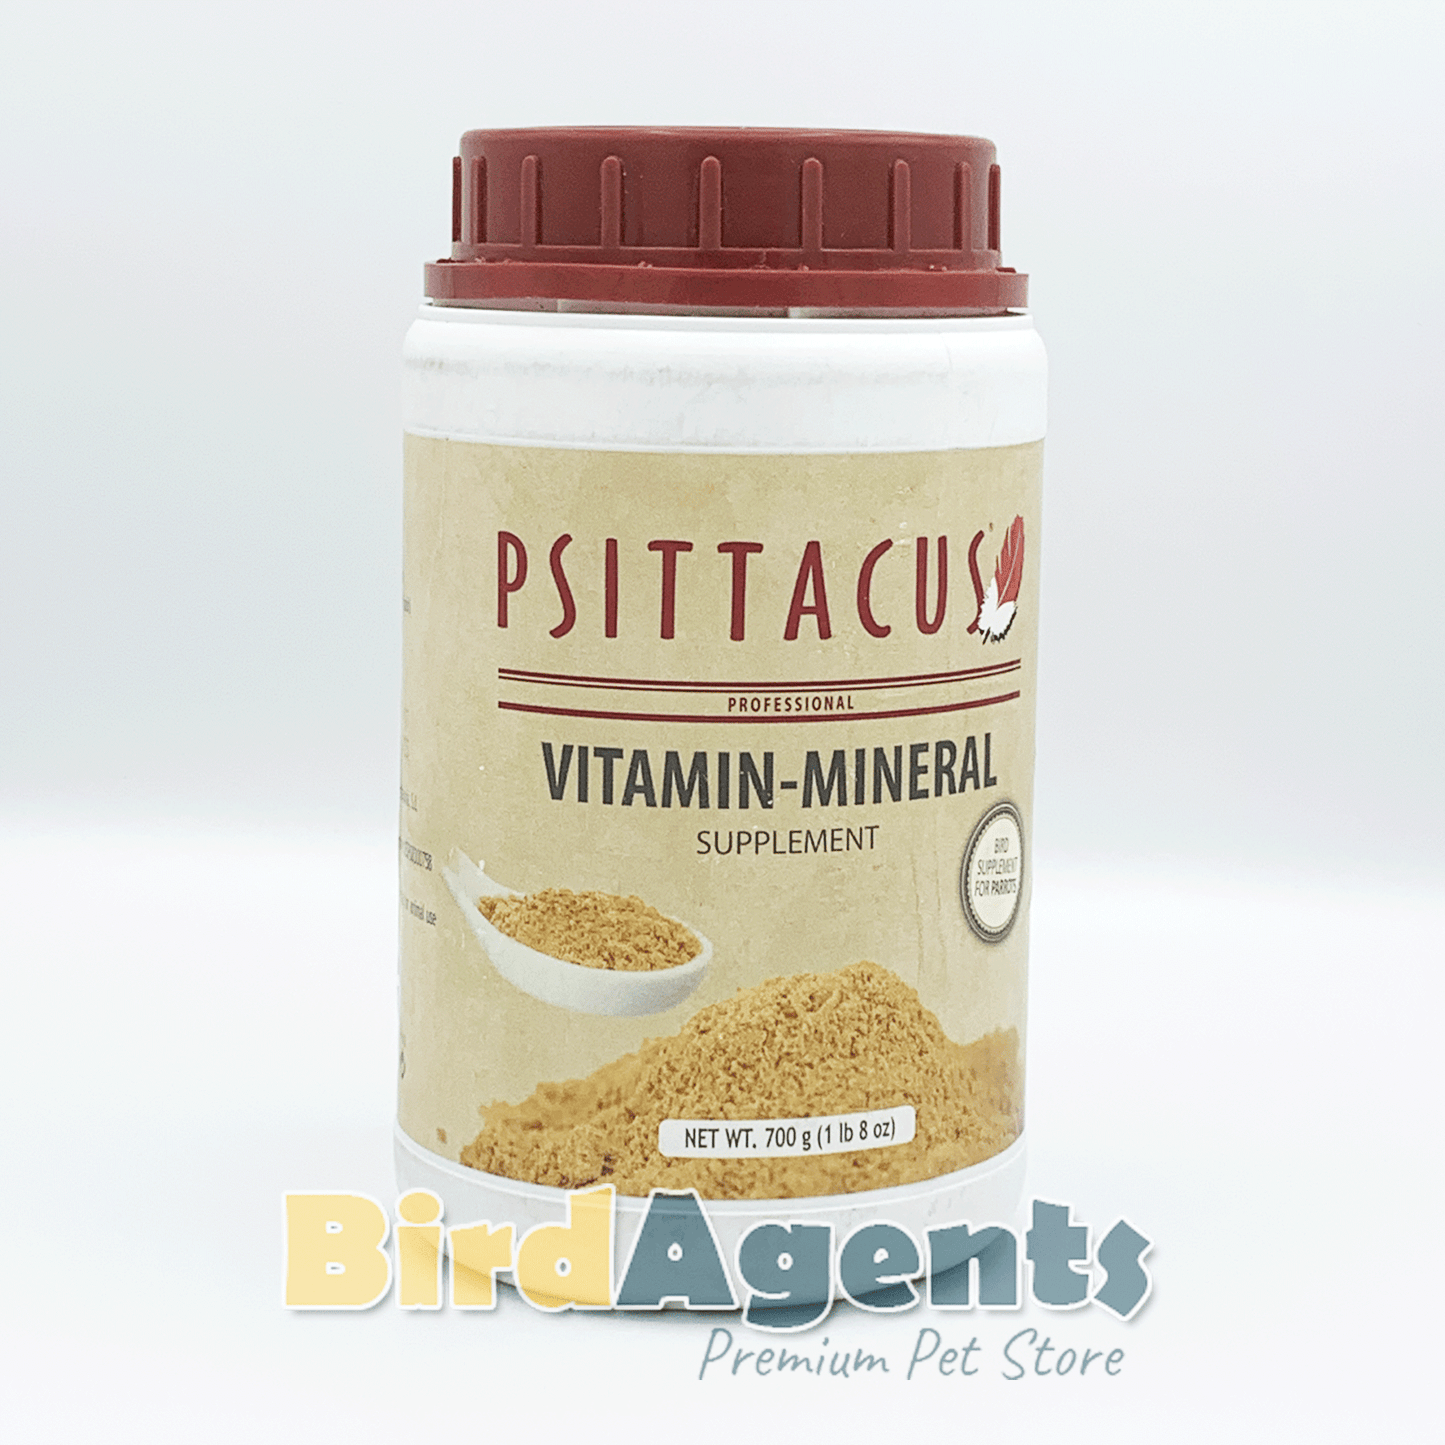 Psittacus Vitamin-Mineral Supplement 700g